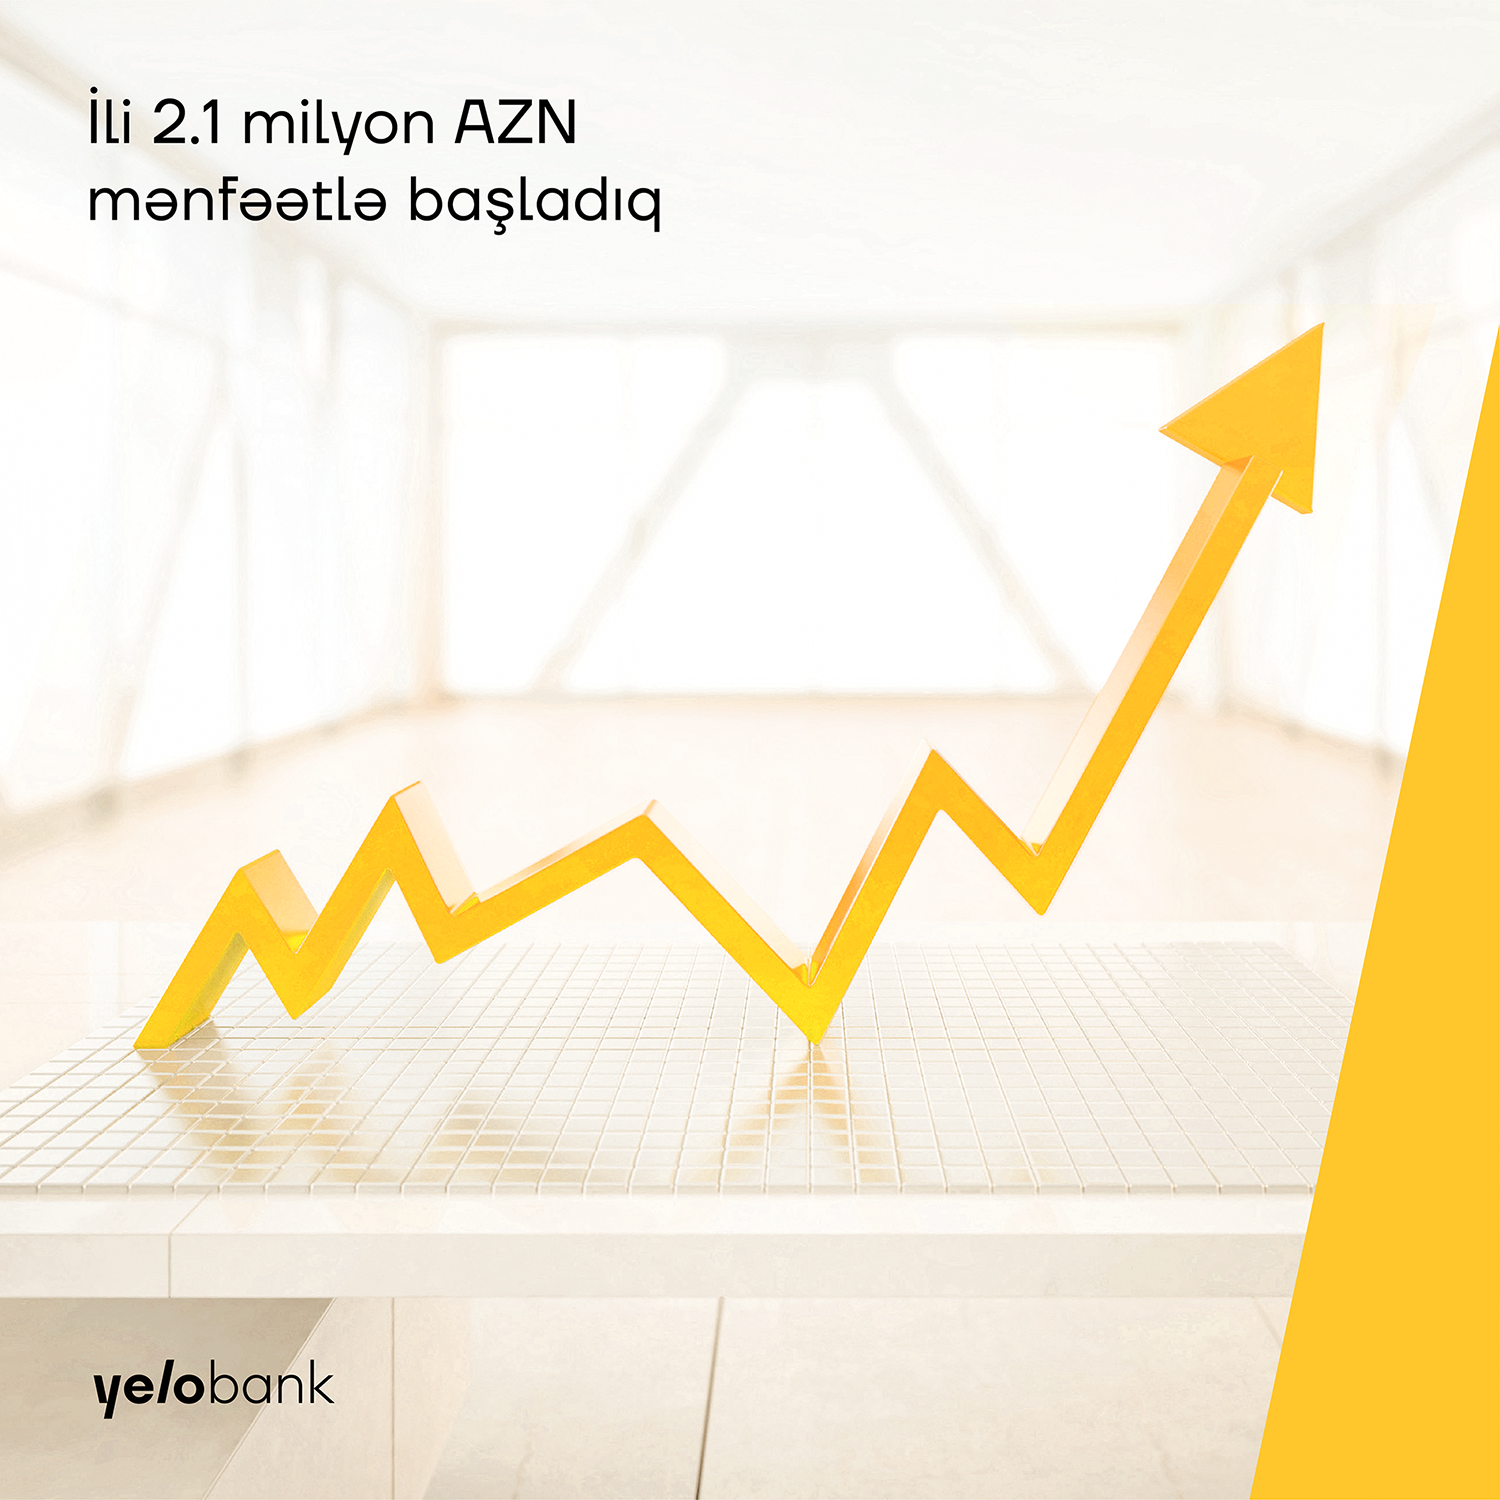 Yelo Bank начал 2021-ый с прибылью свыше 2 млн